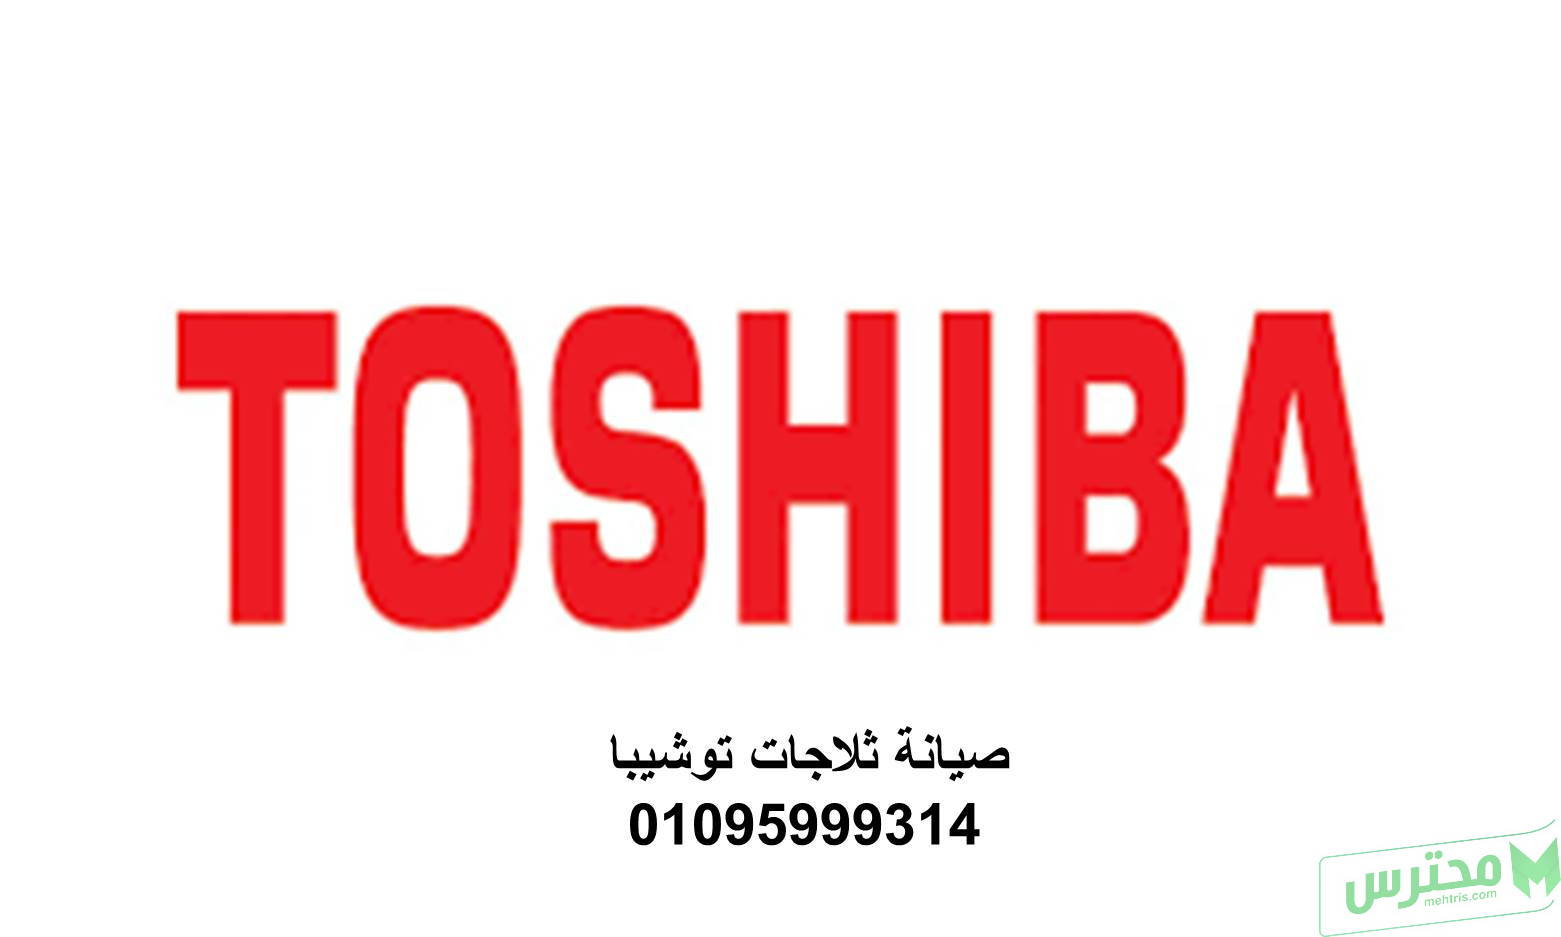 رقم خدمة اصلاح ثلاجات توشيبا الشروق 01207619993